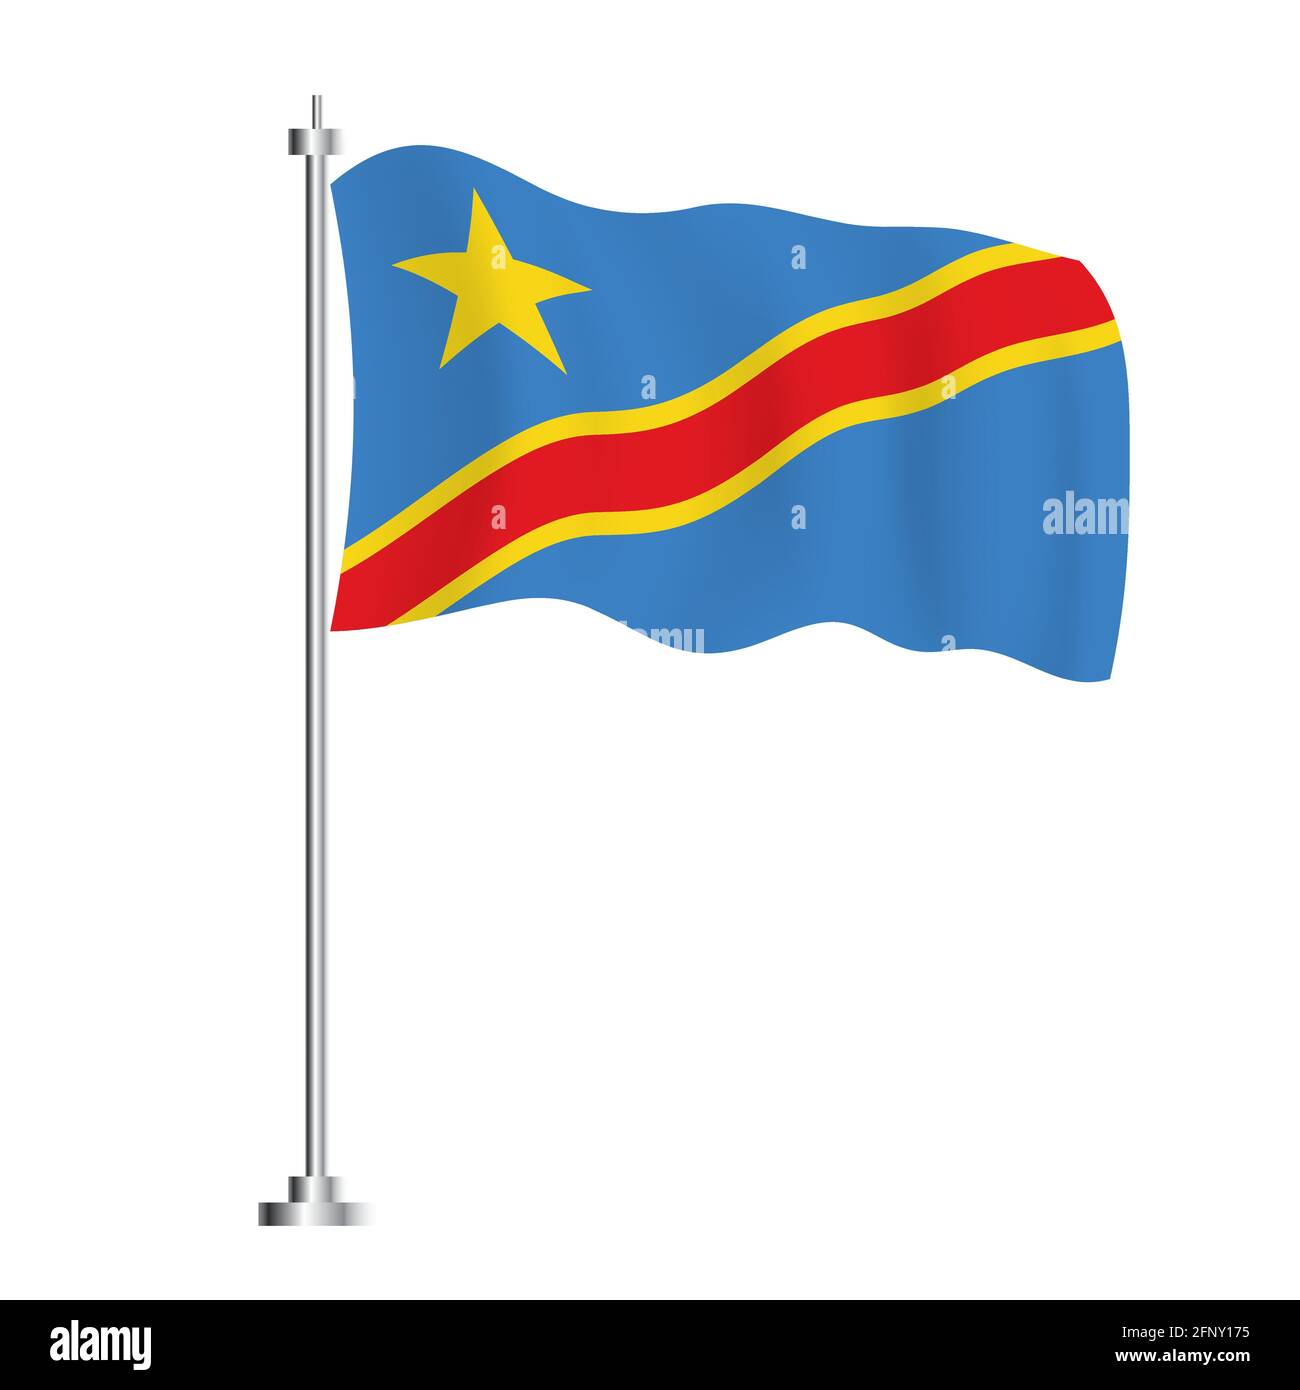 Demokratische Republik Kongo Flagge. Isolierte Wellenfahne des Kongo-Landes. Vektorgrafik. Unabhängigkeitstag. Stock Vektor